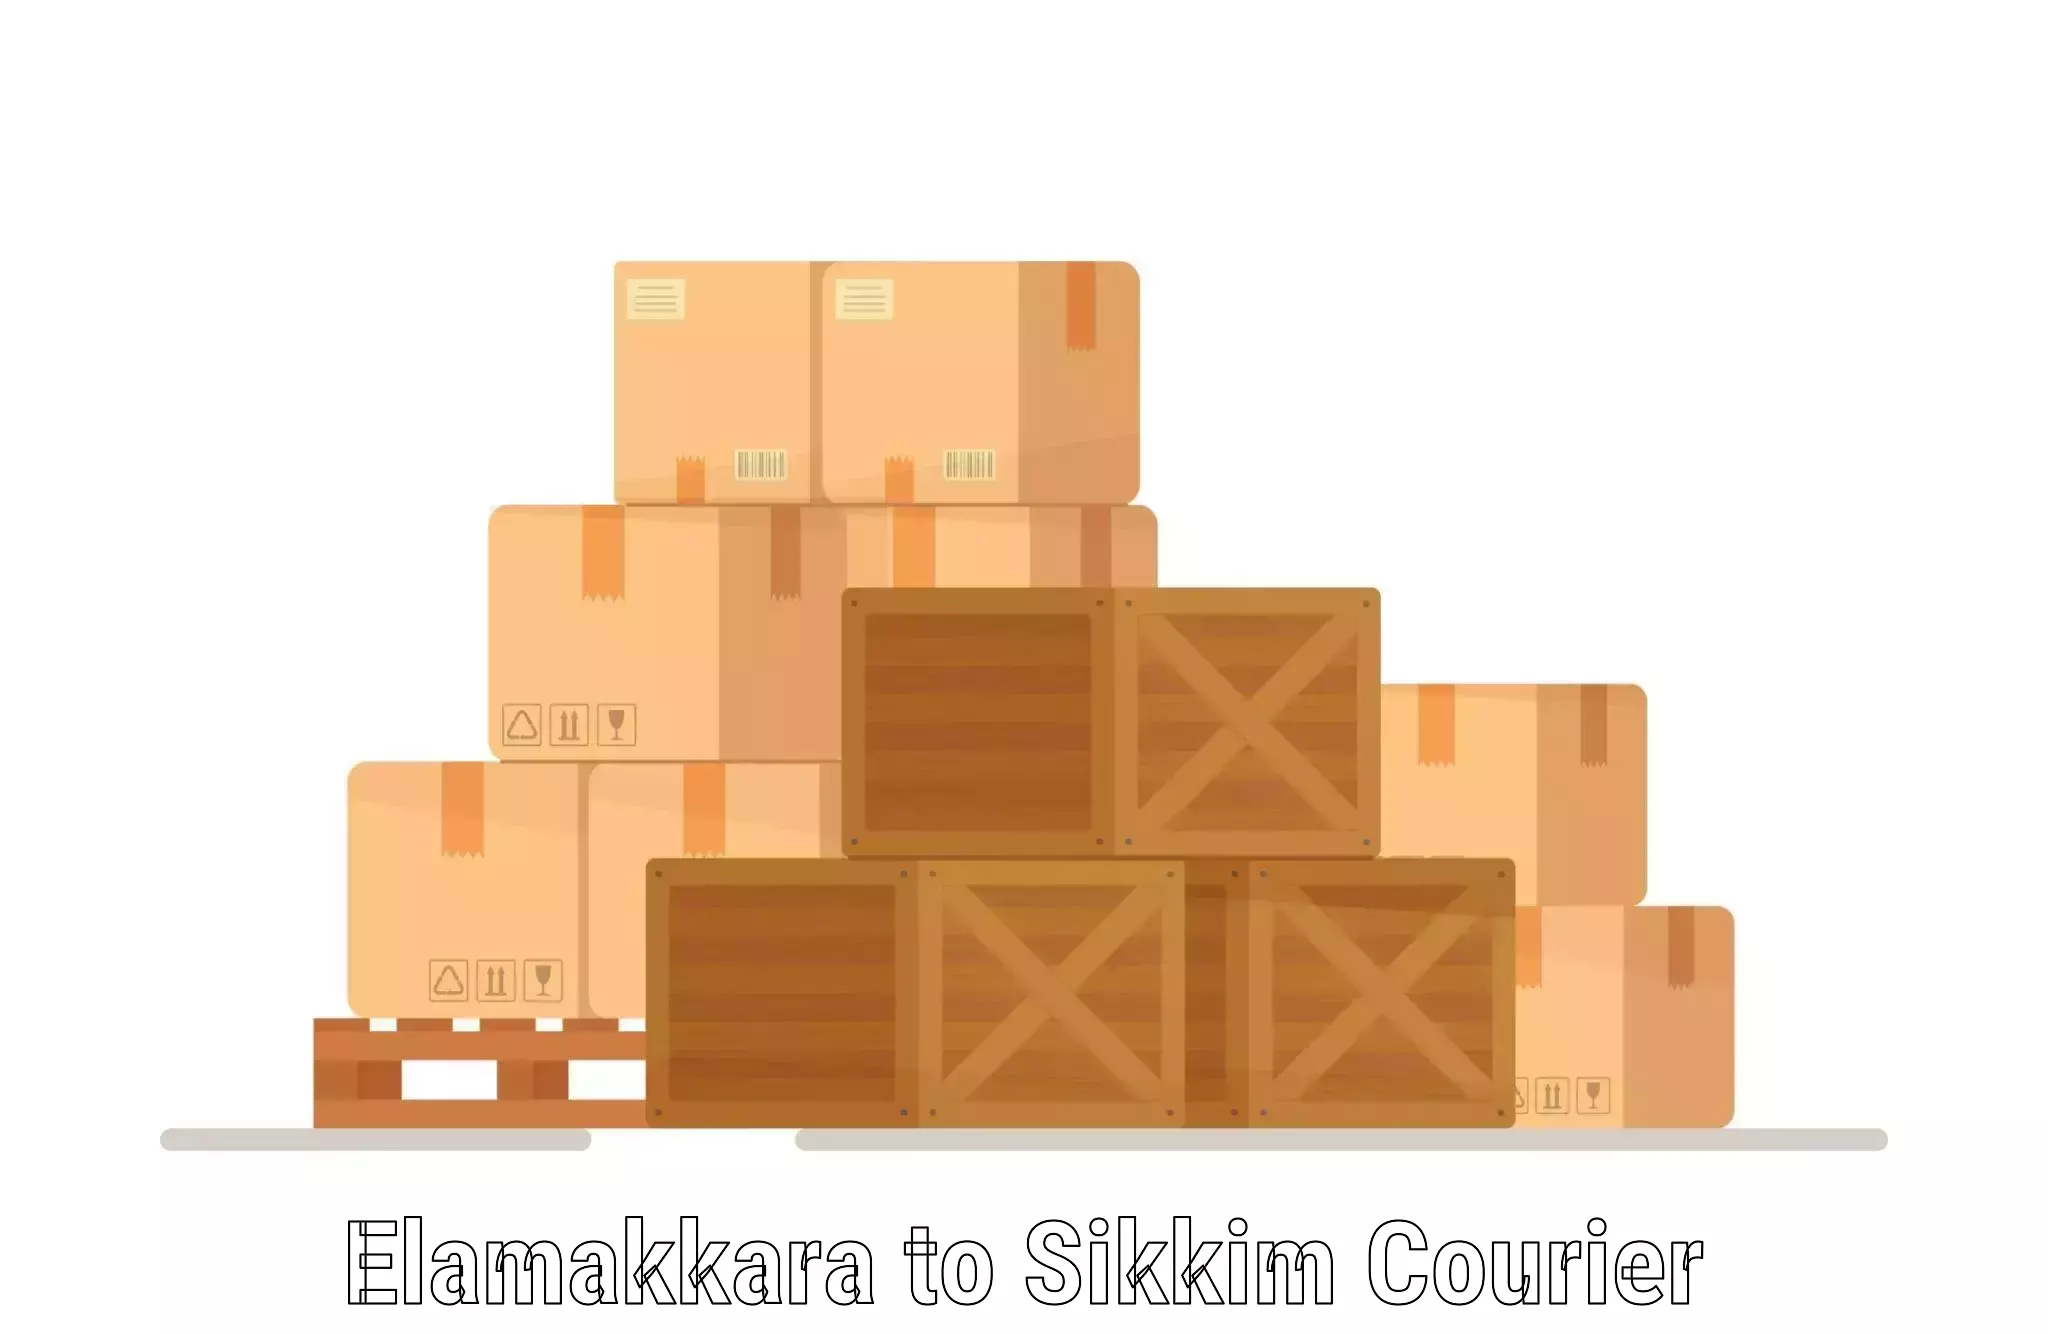 Global freight services Elamakkara to Sikkim